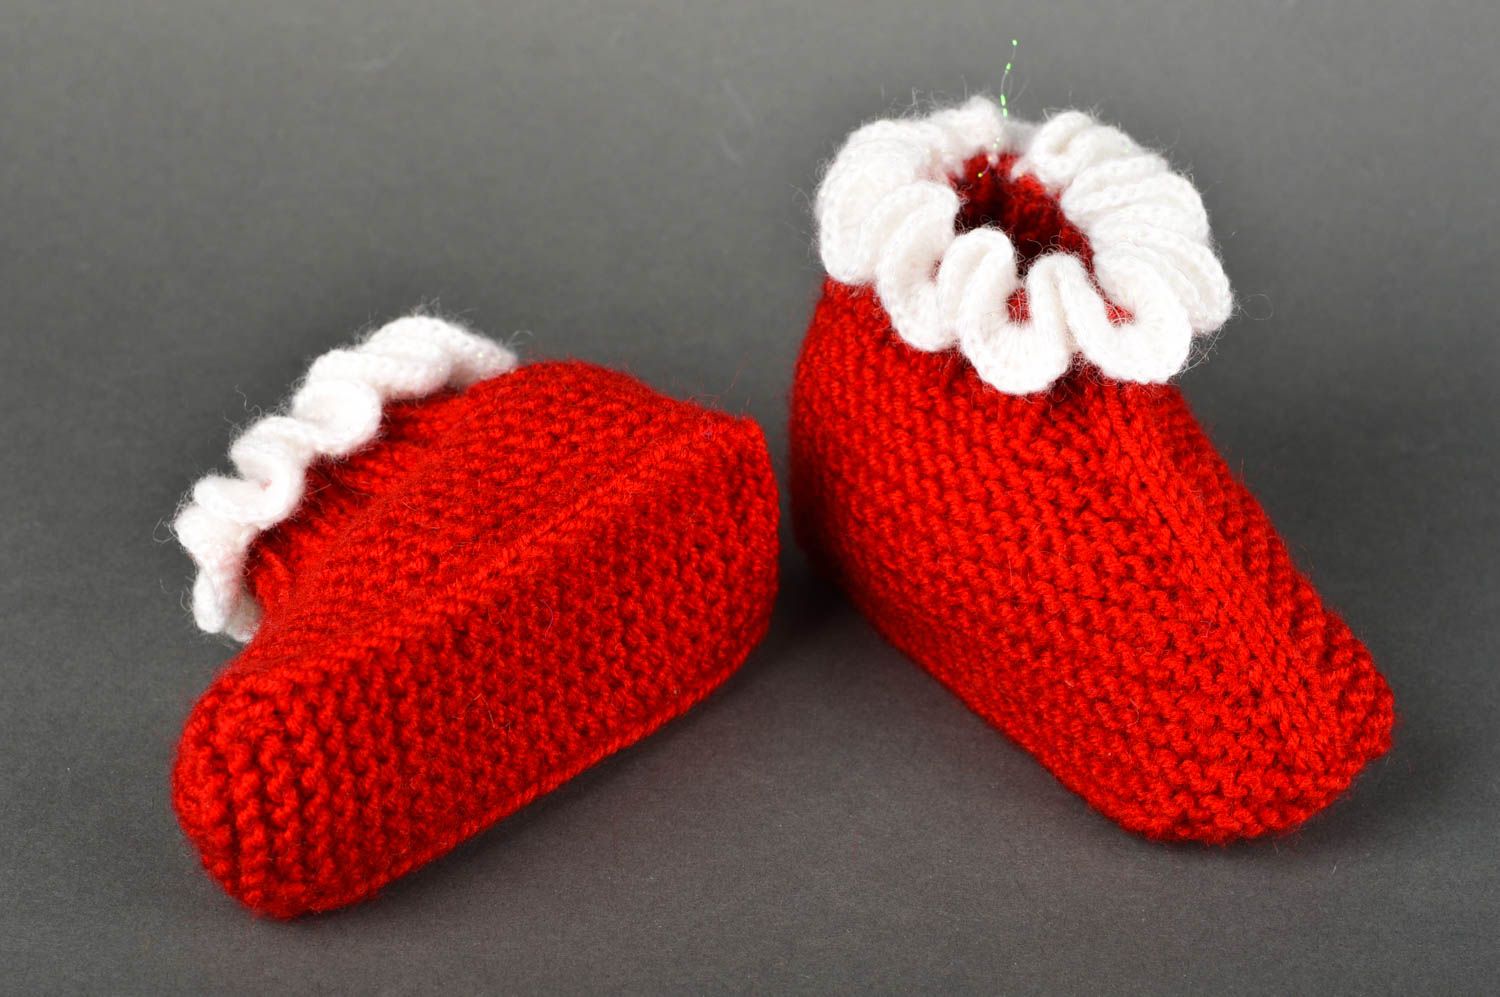 Chaussons de bébé faits main Chaussures bébé rouges tricotés Vêtement bébé photo 5